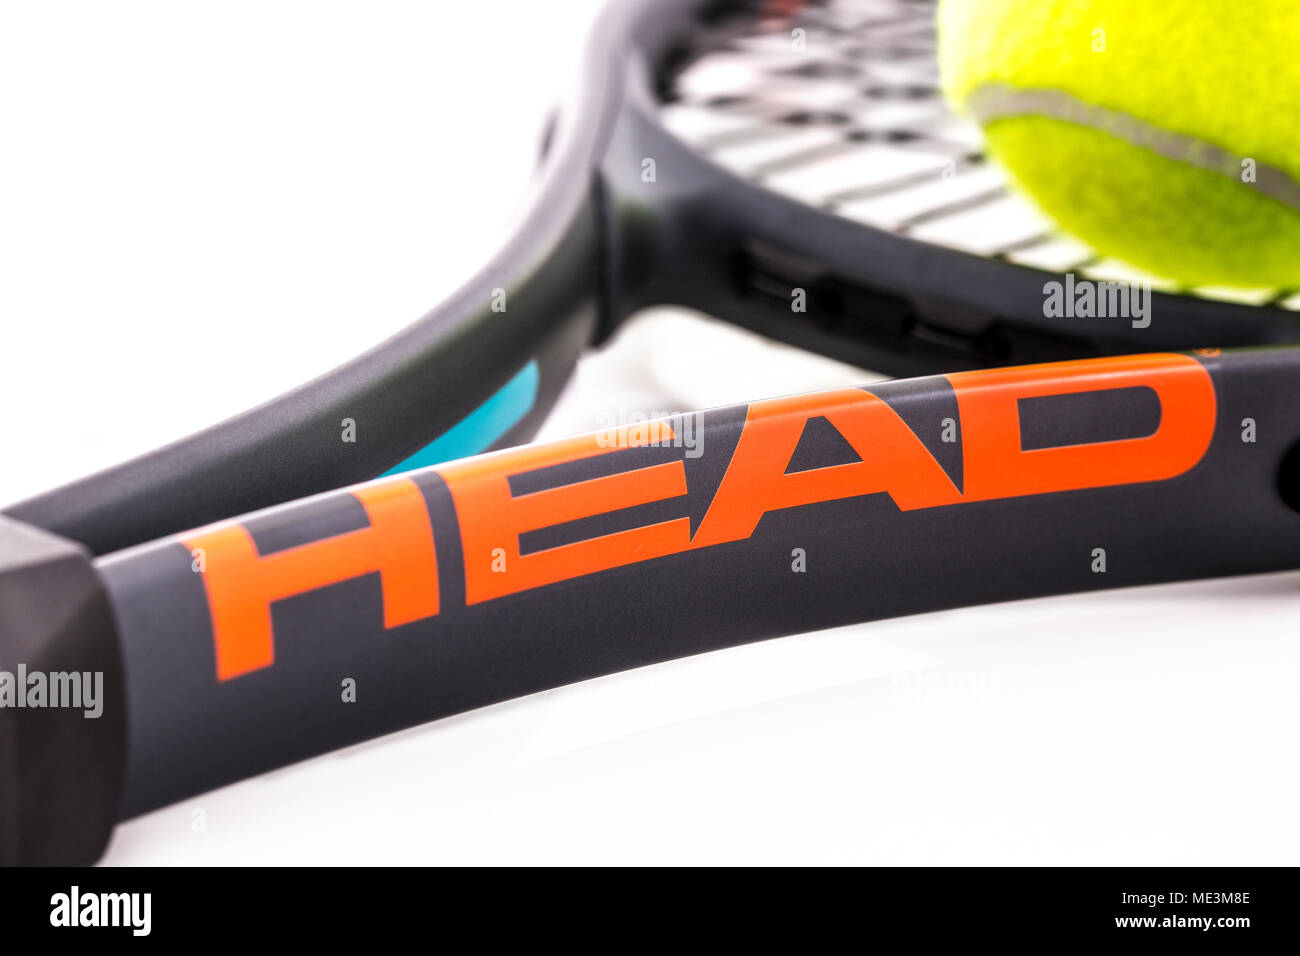 SWINDON, Royaume-Uni - 15 avril 2018 : Head raquette de tennis et de balle Slazenger sur fond blanc Banque D'Images